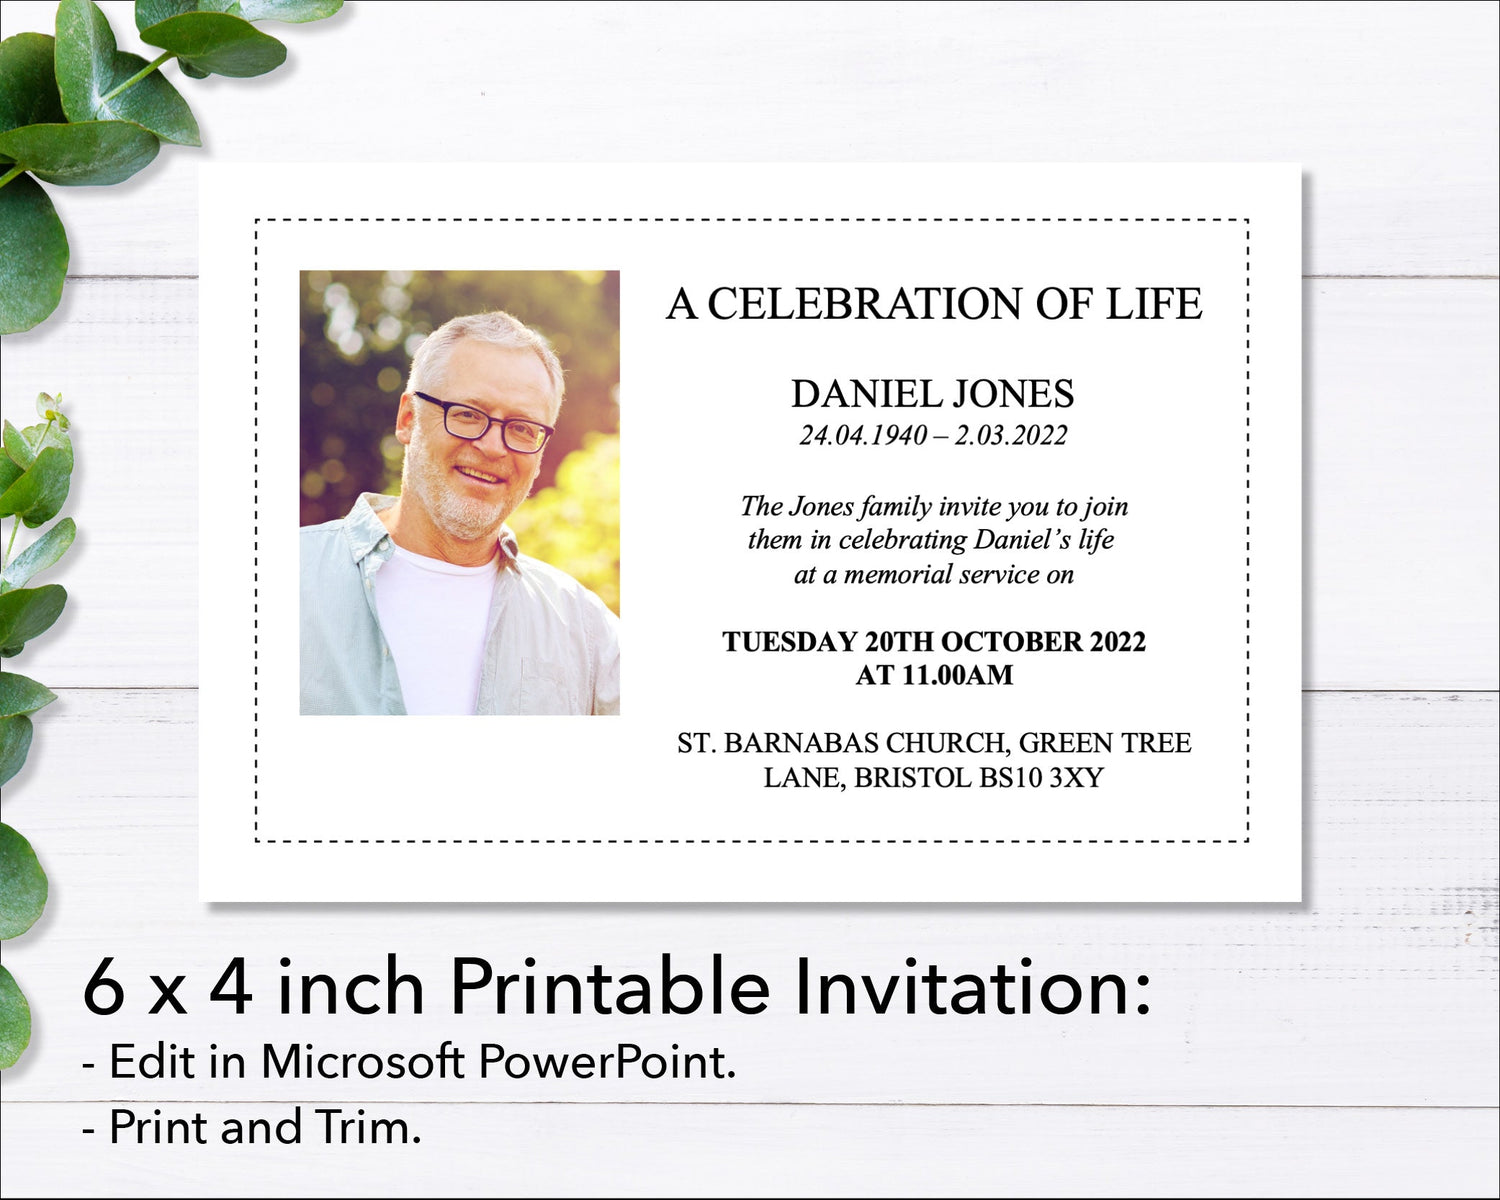 Classic Funeral e-Invite & Invitation Card